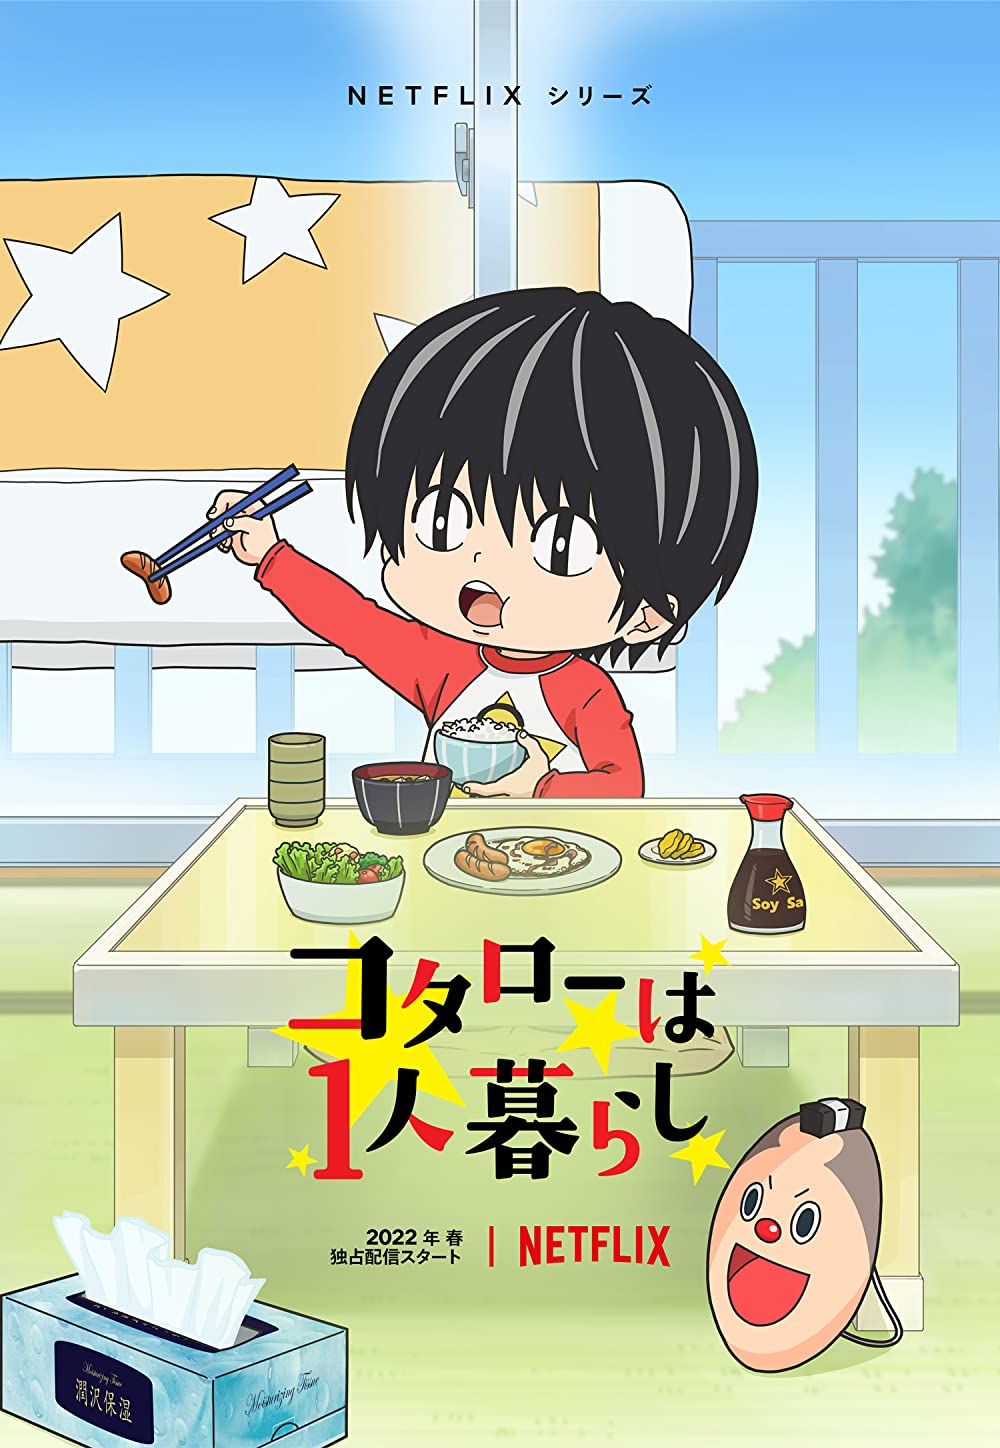 Bokuto Kotaro 4 season /2/ Haikyuu anime, Haikyuu bokuto, Anime character  design, haikyuu season 4 characters - thirstymag.com